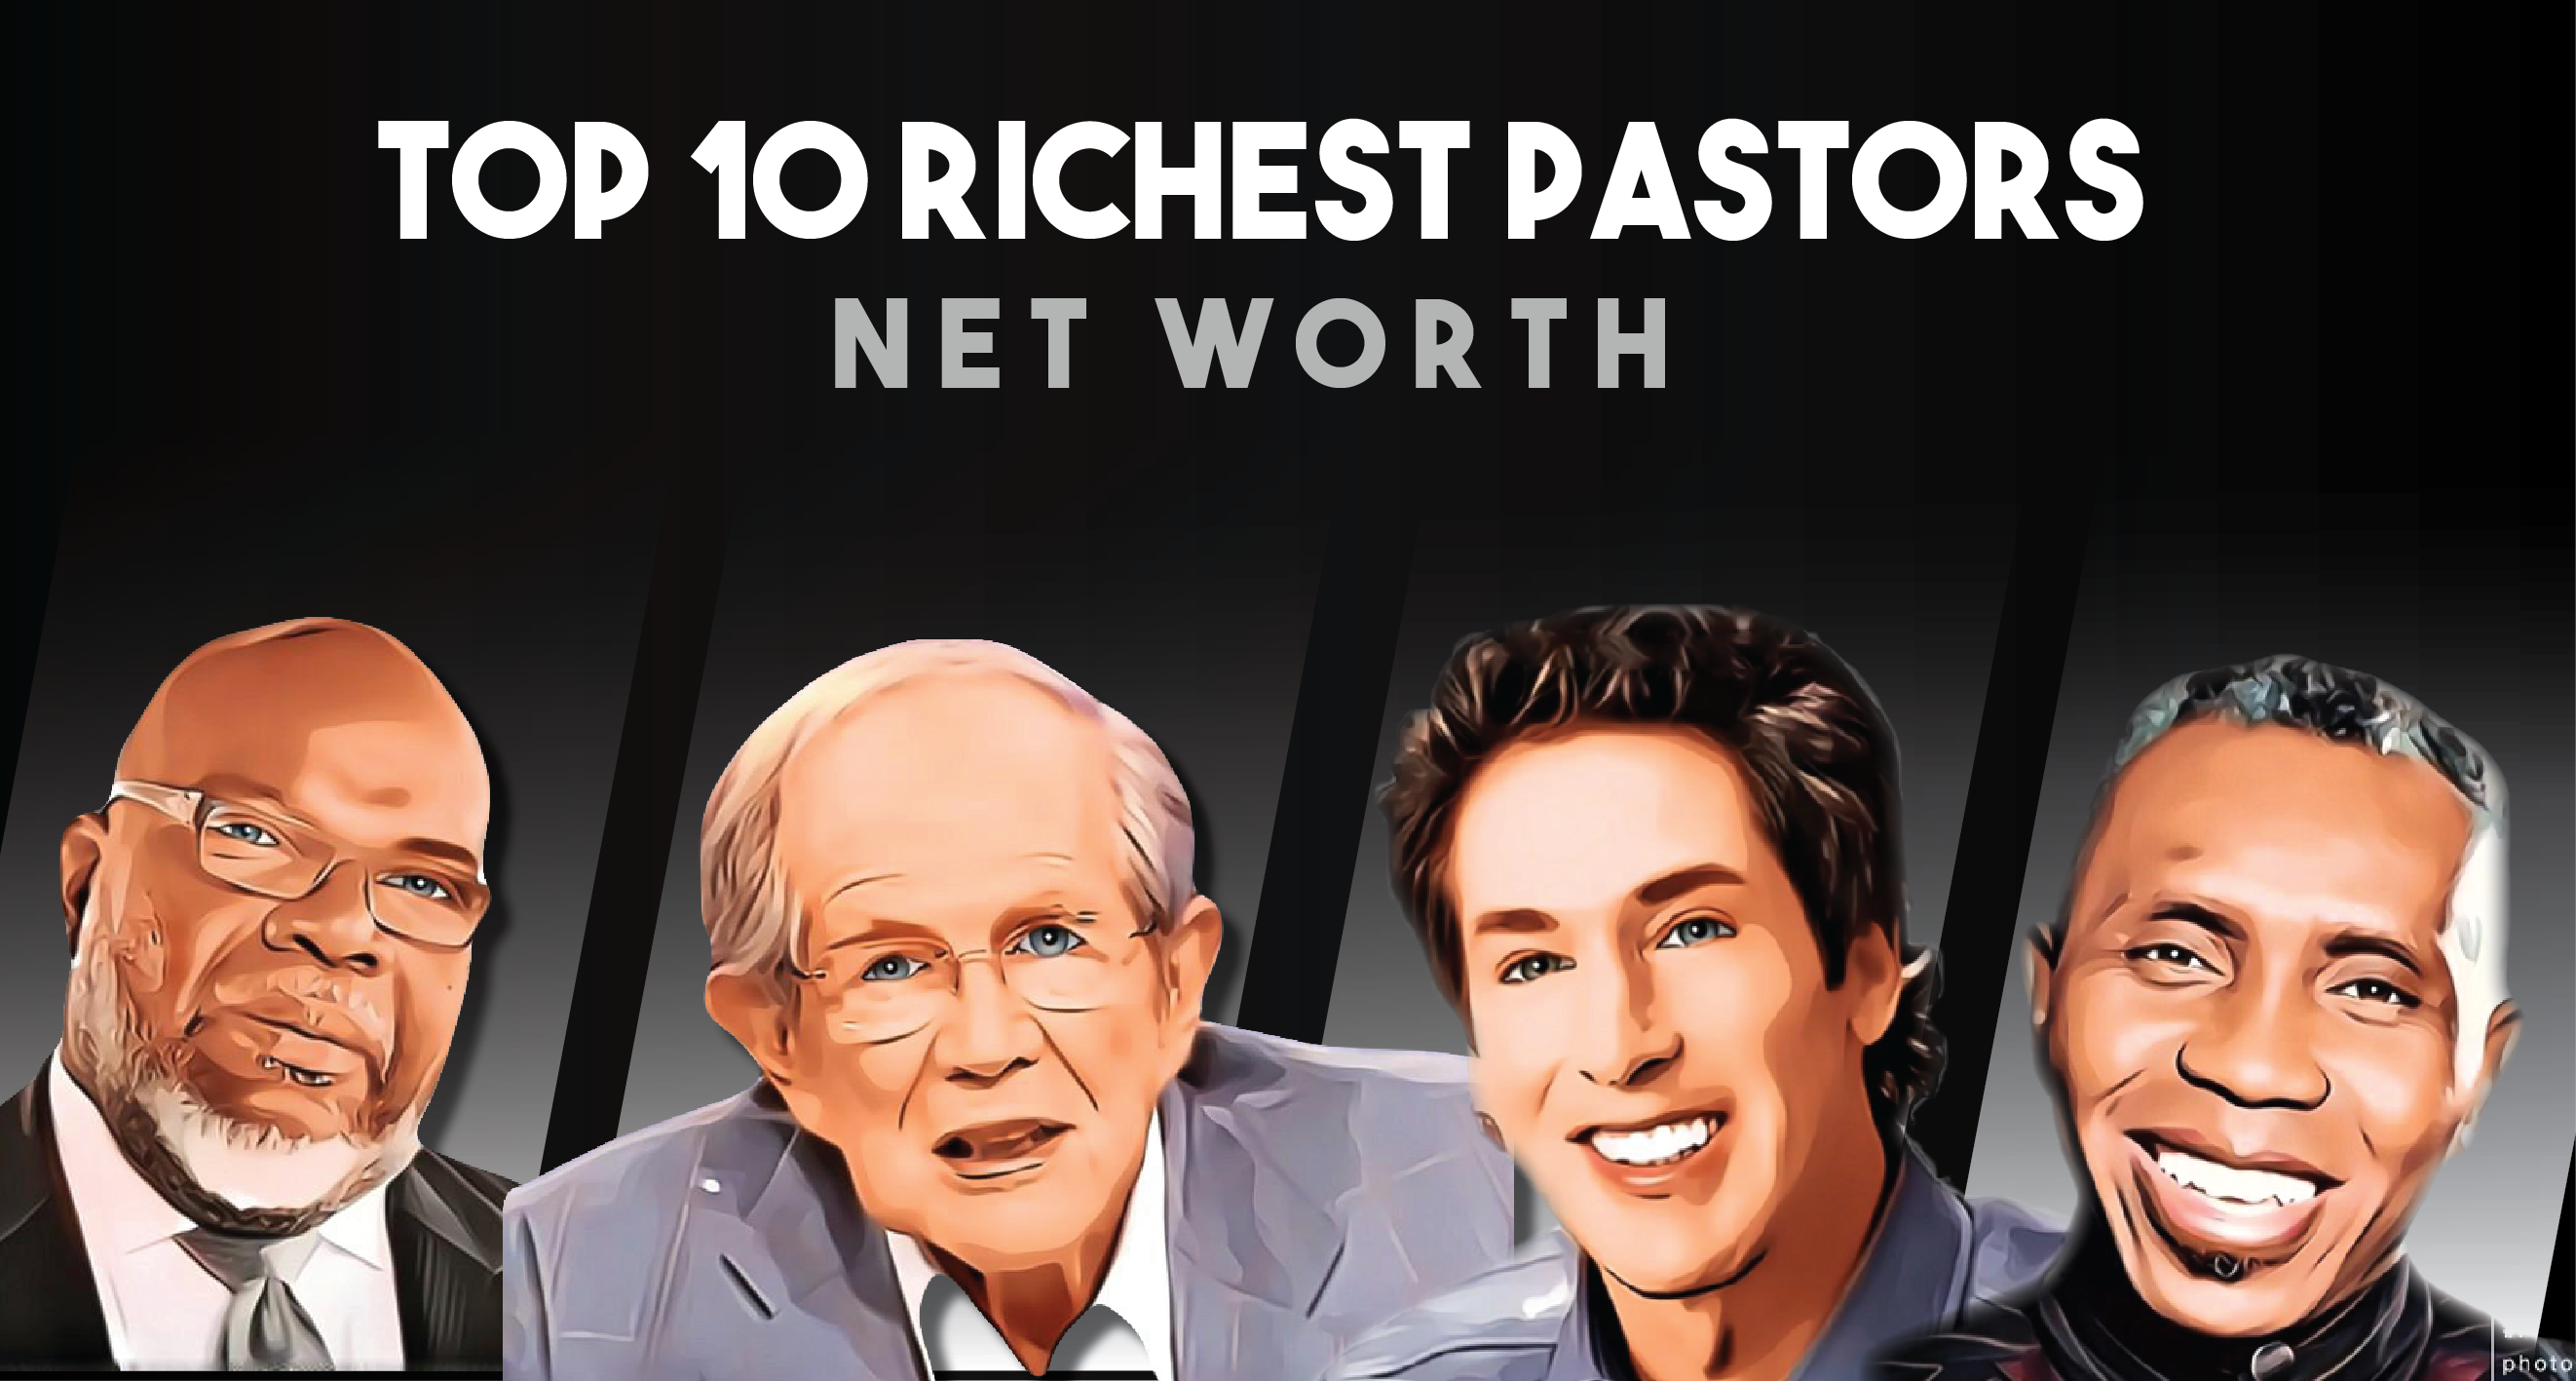 Top 10 Richest Pastors